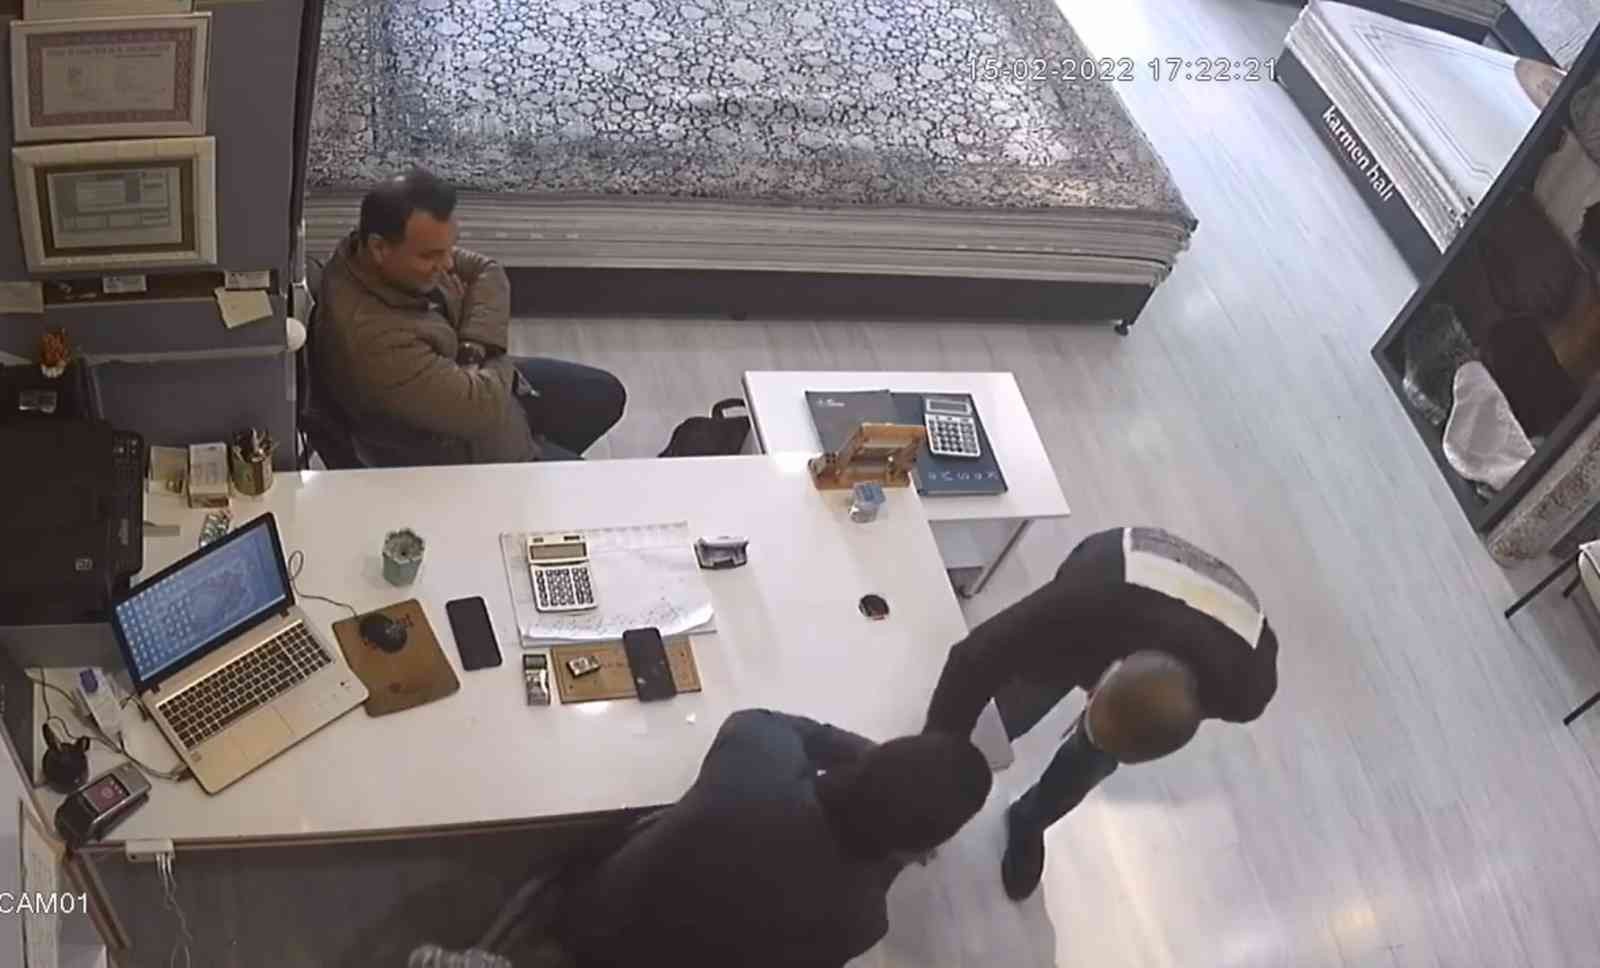 Hırsızlık yaptığı halı mağazasına gelip, iş yeri sahibinin elini öpmek istedi #antalya